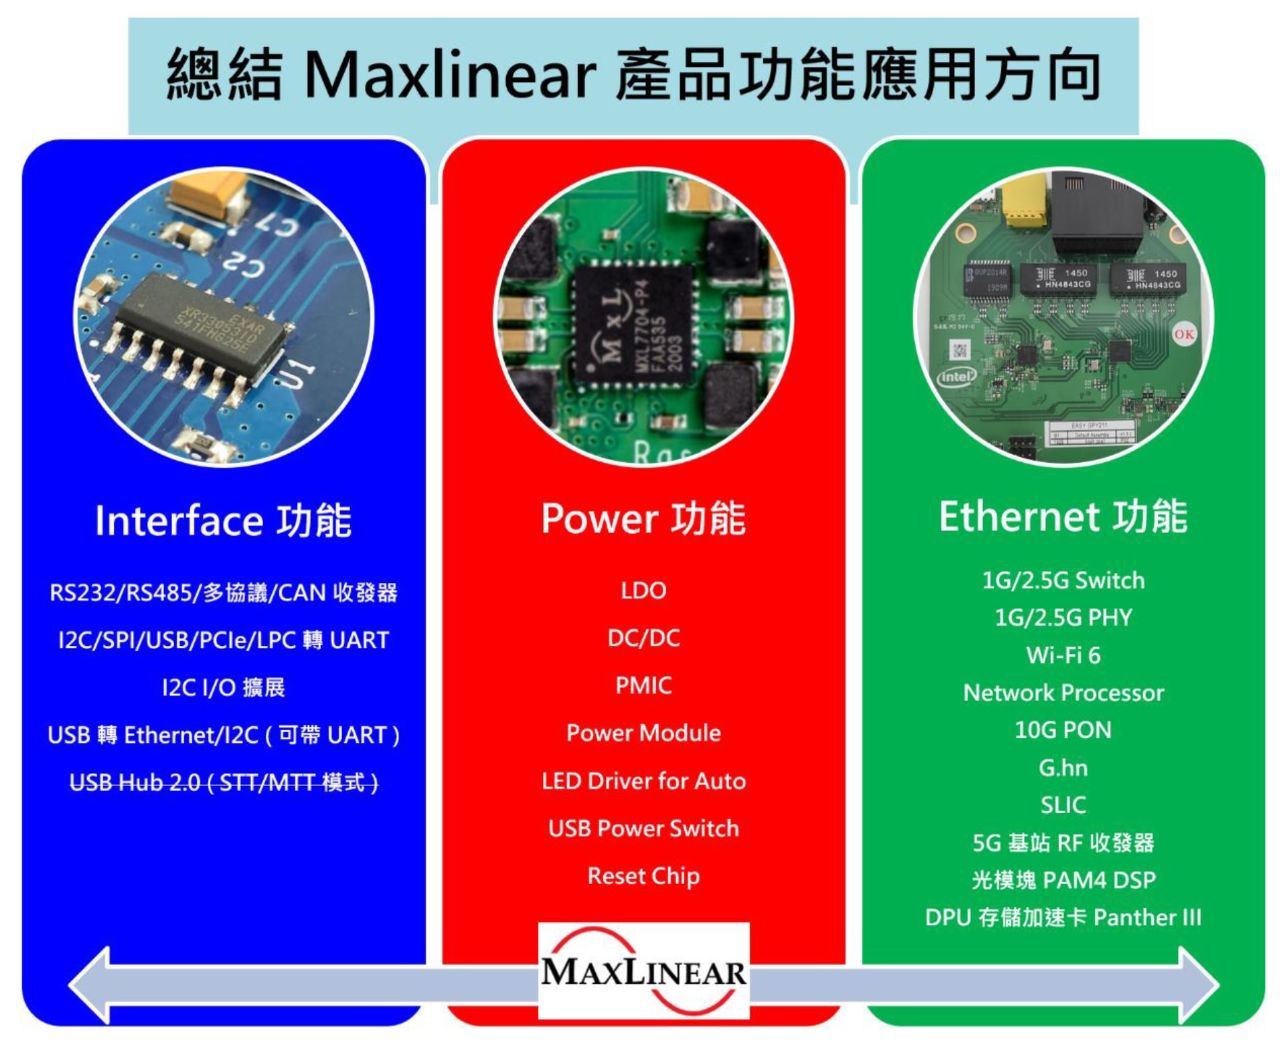 001-13-總結 Maxlinear 產品功能應用方向